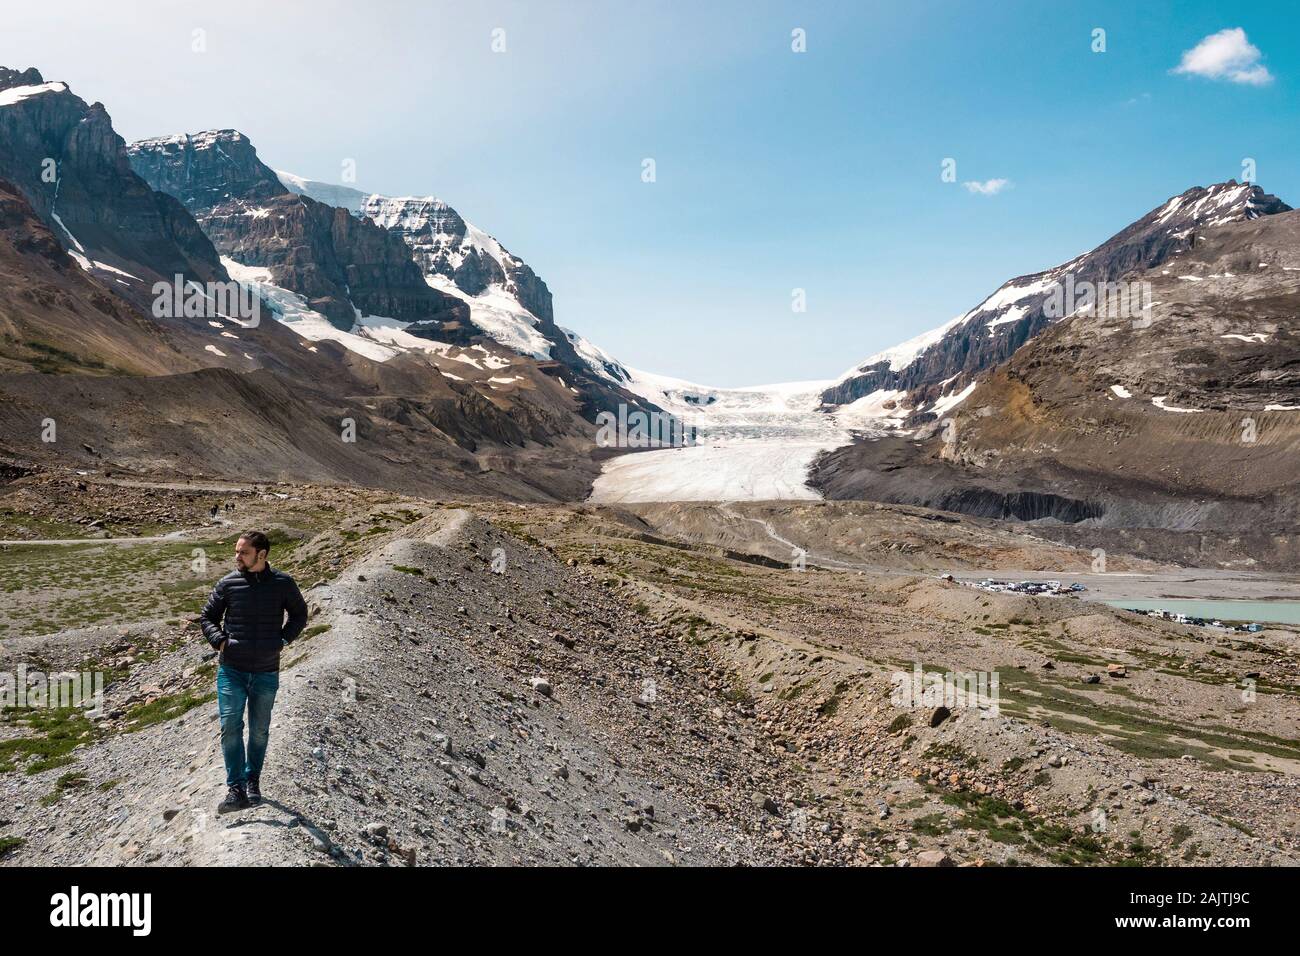 Touristische an der berühmten Athabasca Gletscher im Nationalpark Jasper, kanadische Rockies in Alberta, Kanada. Stockfoto